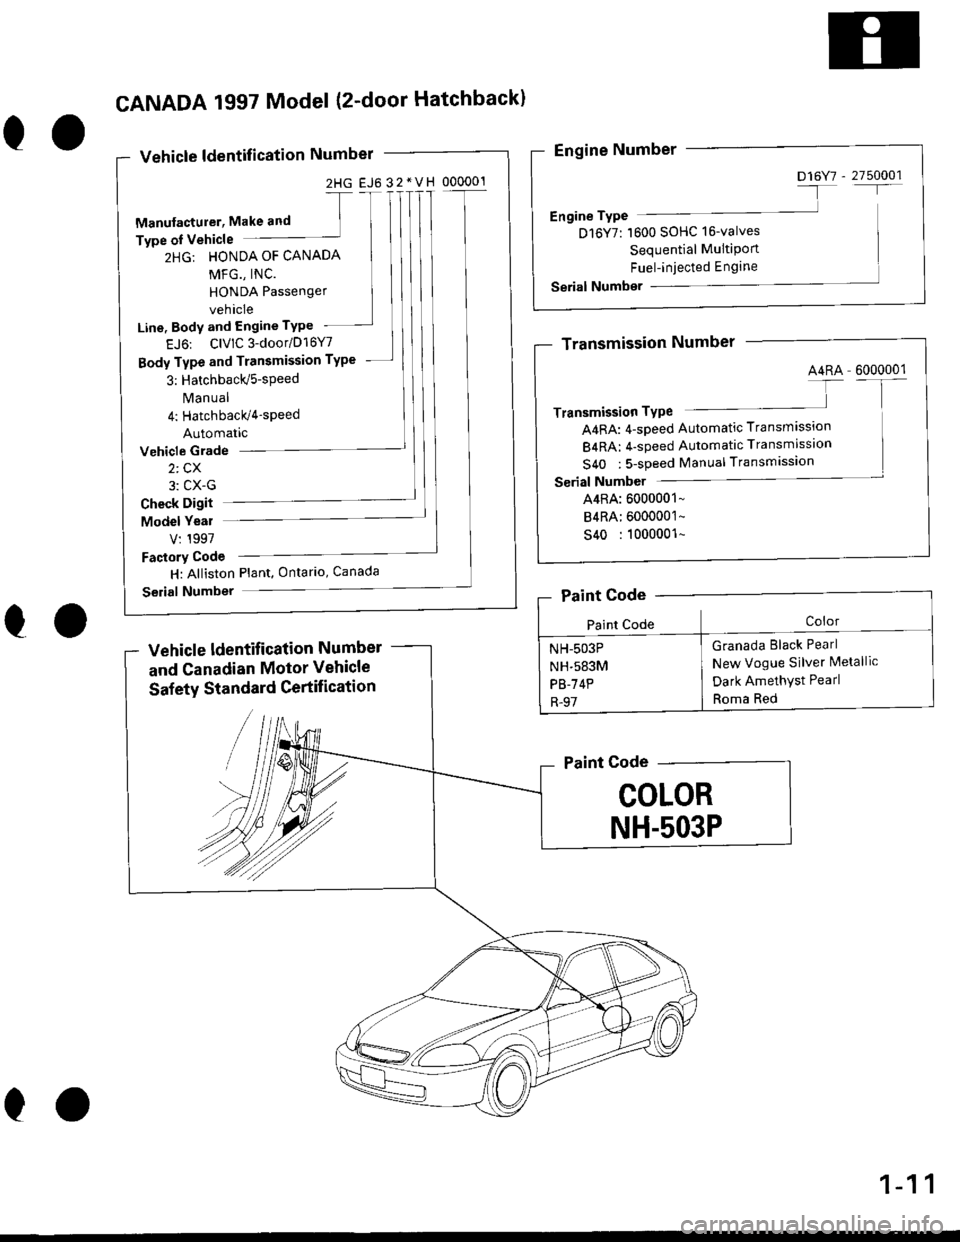 HONDA CIVIC 1999 6.G Workshop Manual 2HG EJ6 32*VH 000001
eo
CANADA 1997 Model (2-door Hatchbackl
Vehicle ldentification Number
-[
Manufacturer, Make and ]Type oI Vehicle
2HG: HONDA OF CANADA
MFG., INC.
HONDA Passenger
vehicle
Line, Body